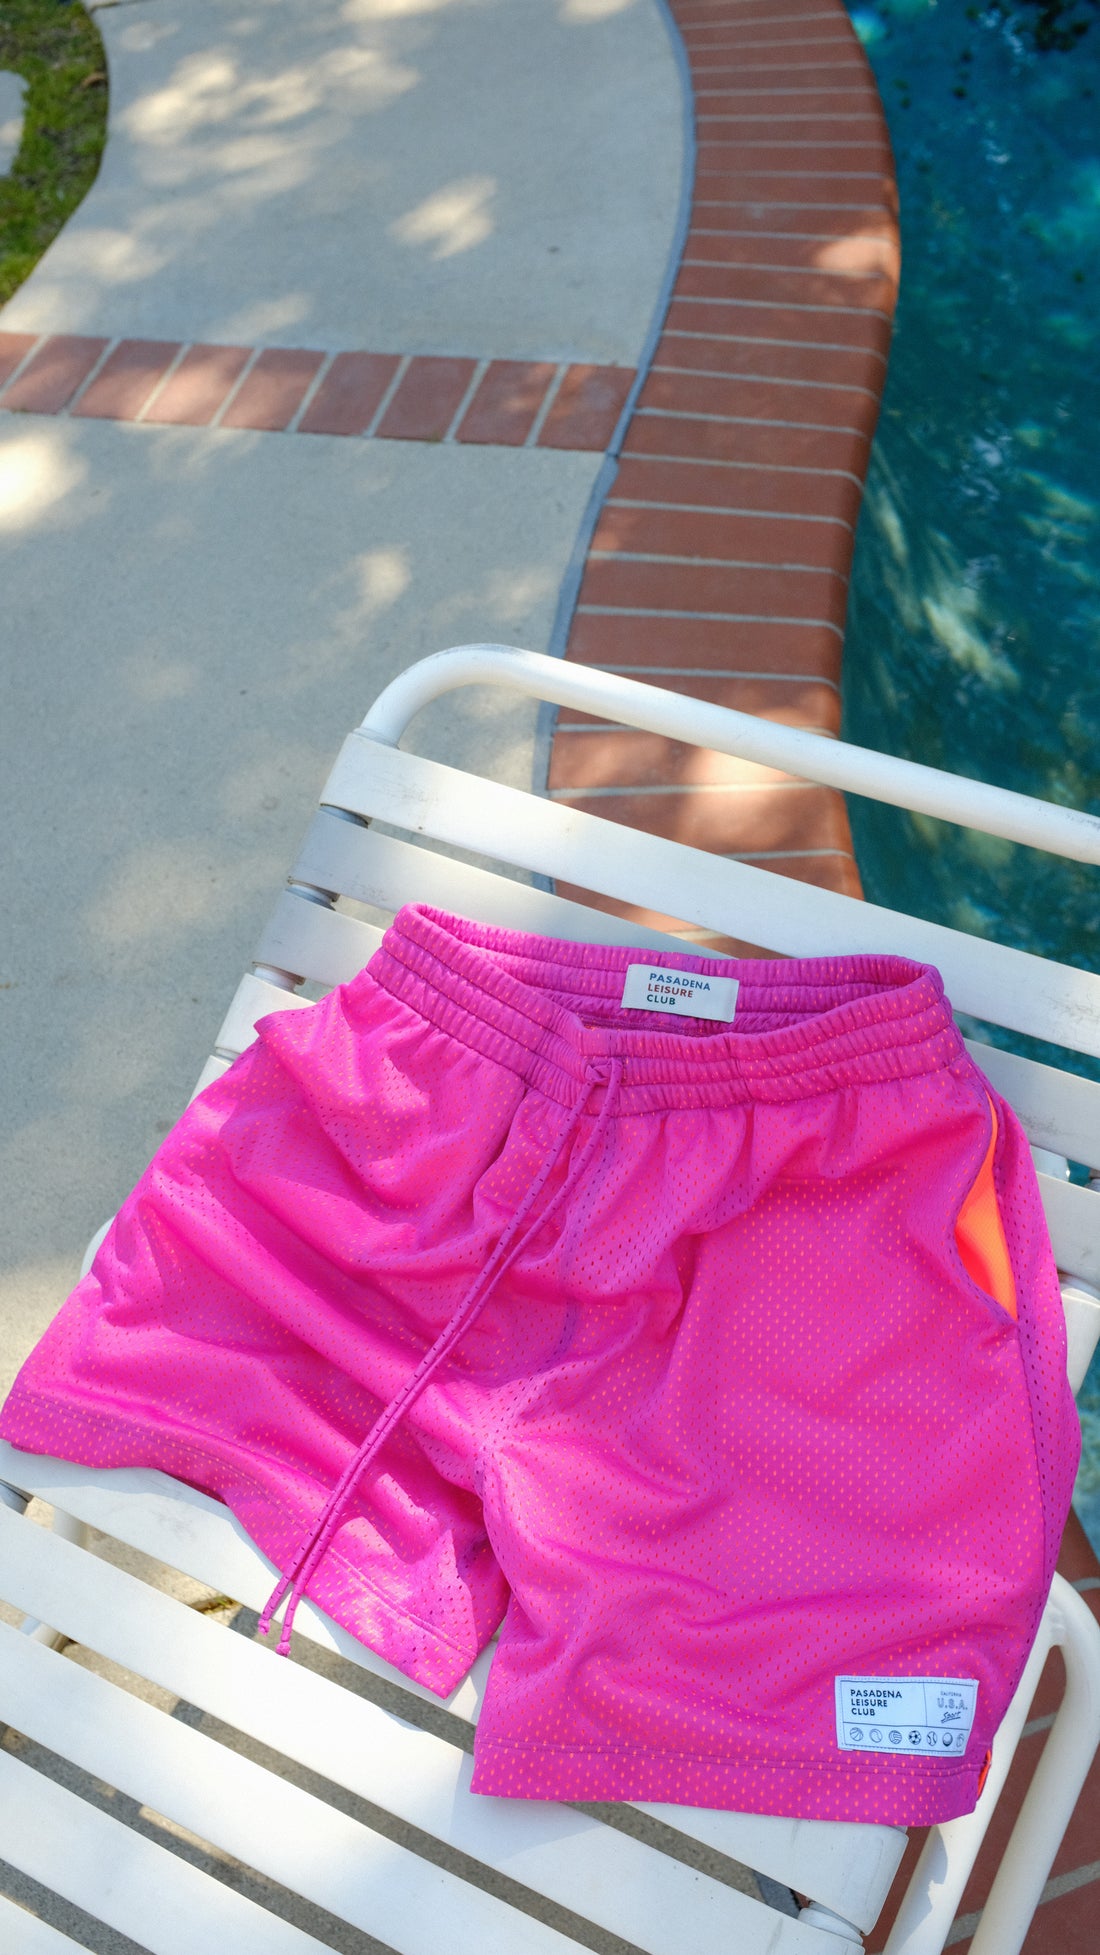 Shia LaBeouf's Hot Pink Shorts